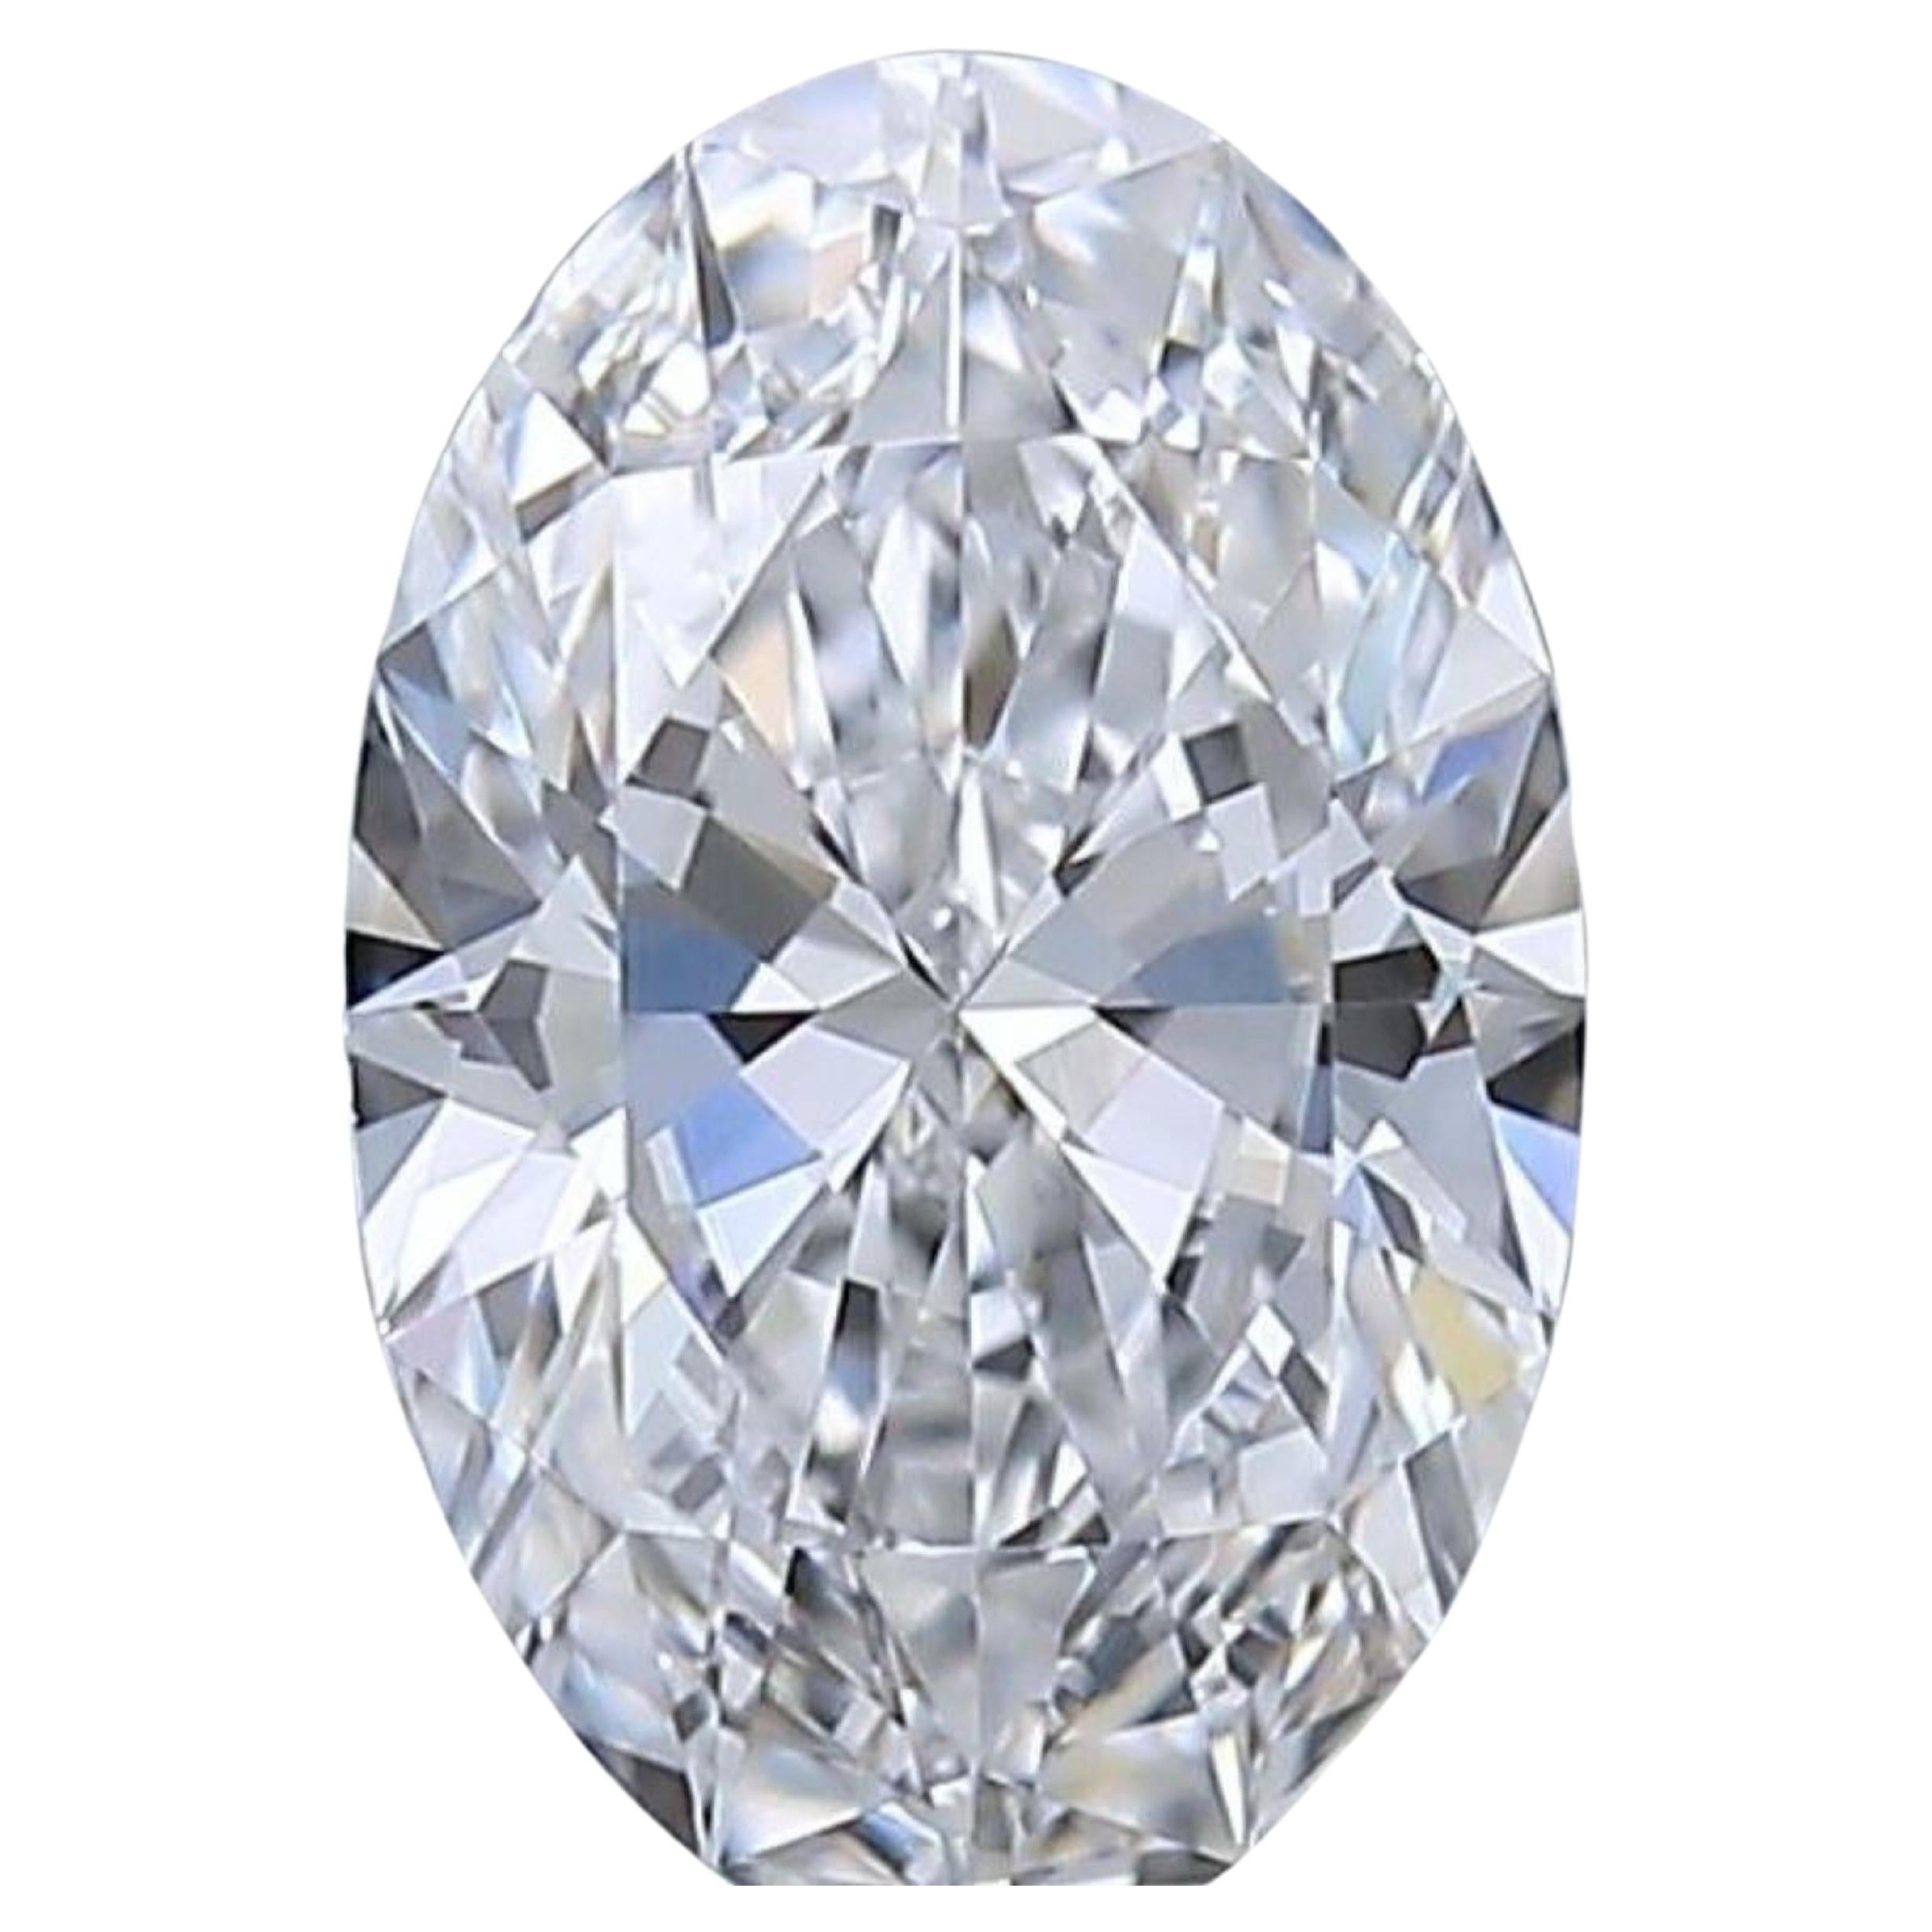 1Stk. Sparkling .70 Ovaler natürlicher Diamant im Brillantschliff